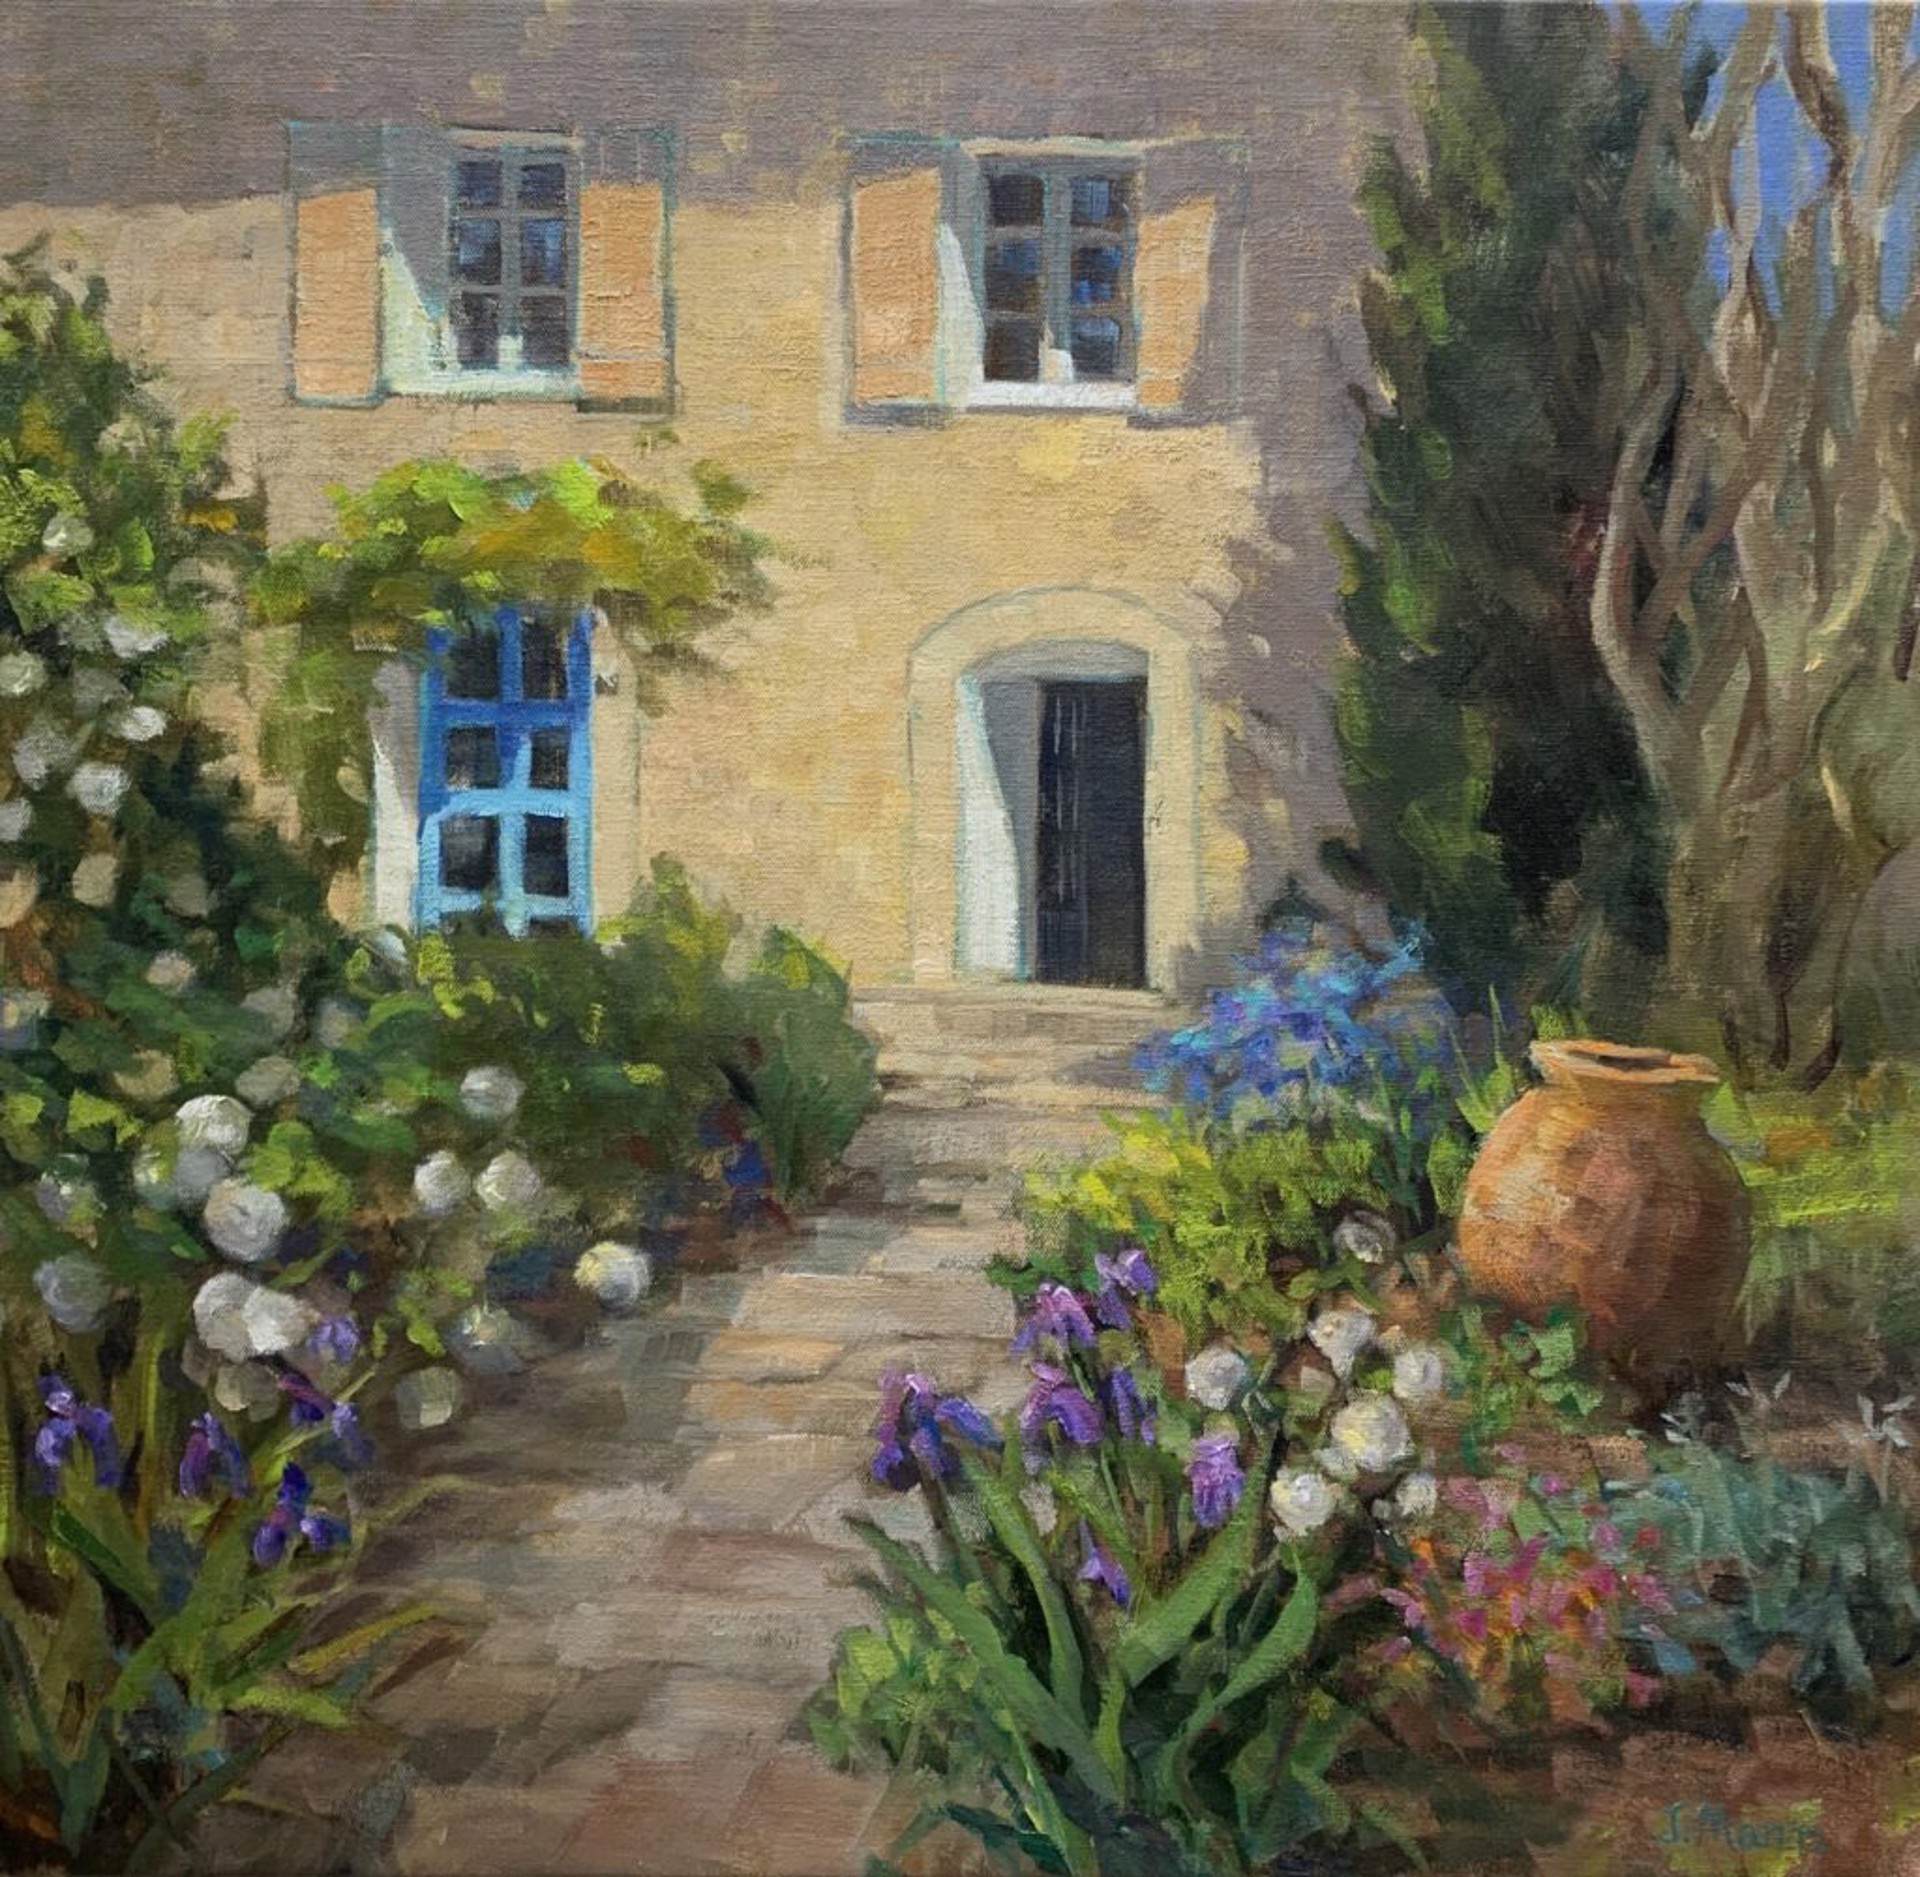 The Well-Kept Garden by Julie Mann